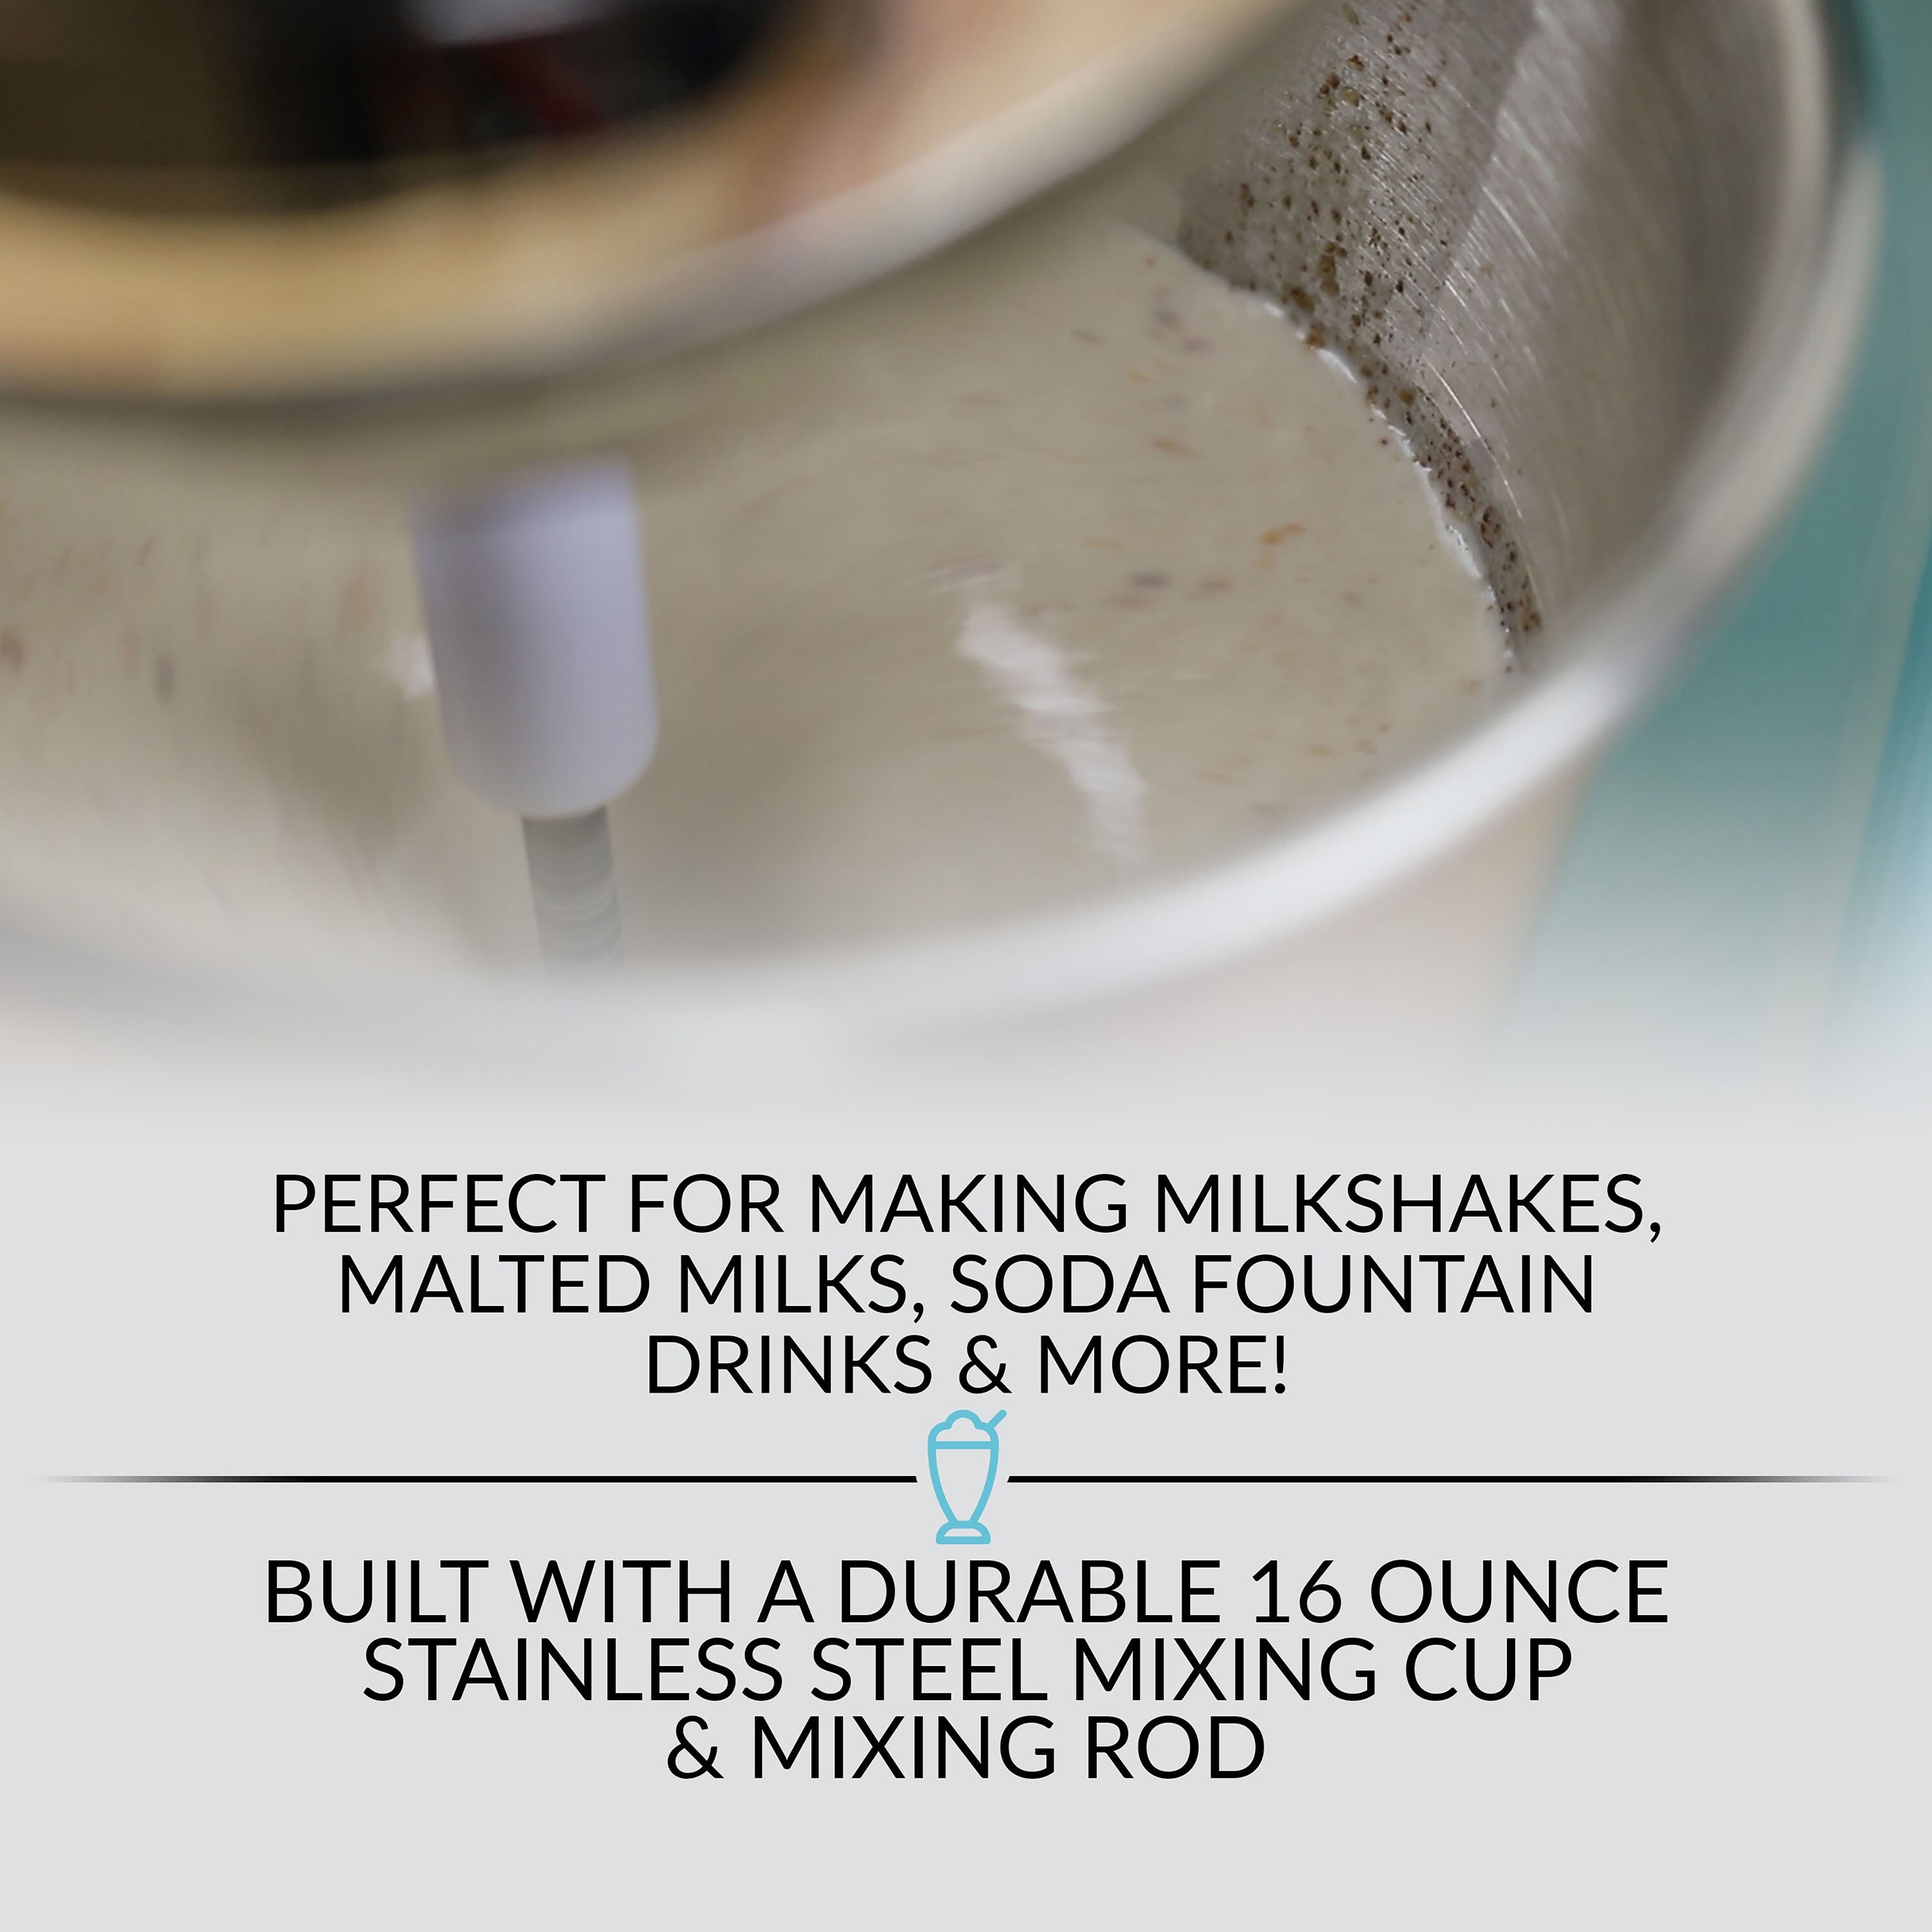 2-Speed Milkshake Maker and Drink Mixer